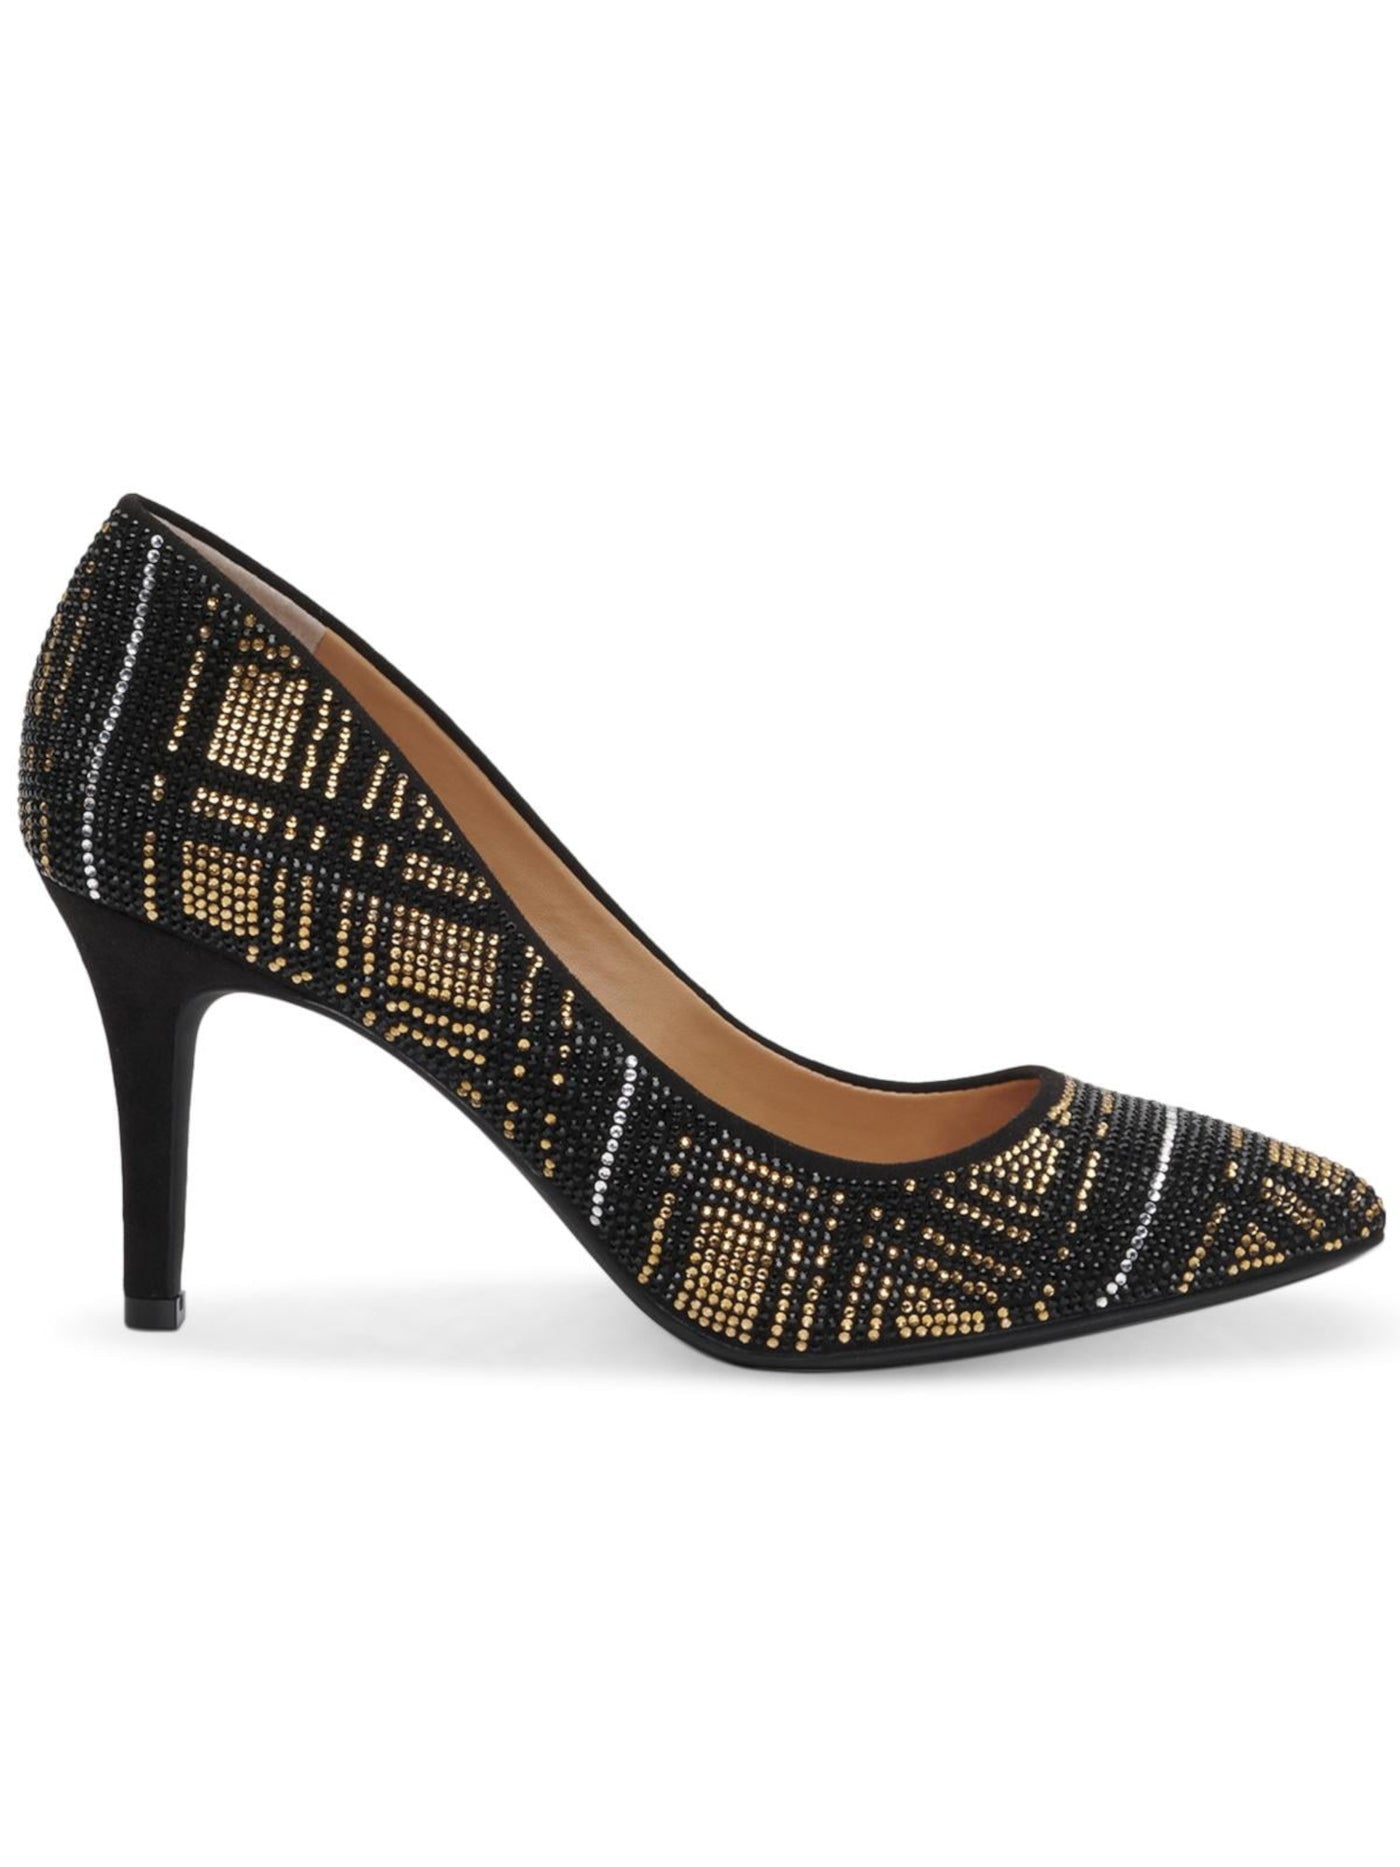 INC Womens Black Plaid Rhinestone Zitah Round Toe Stiletto Slip On Pumps Shoes 10 M